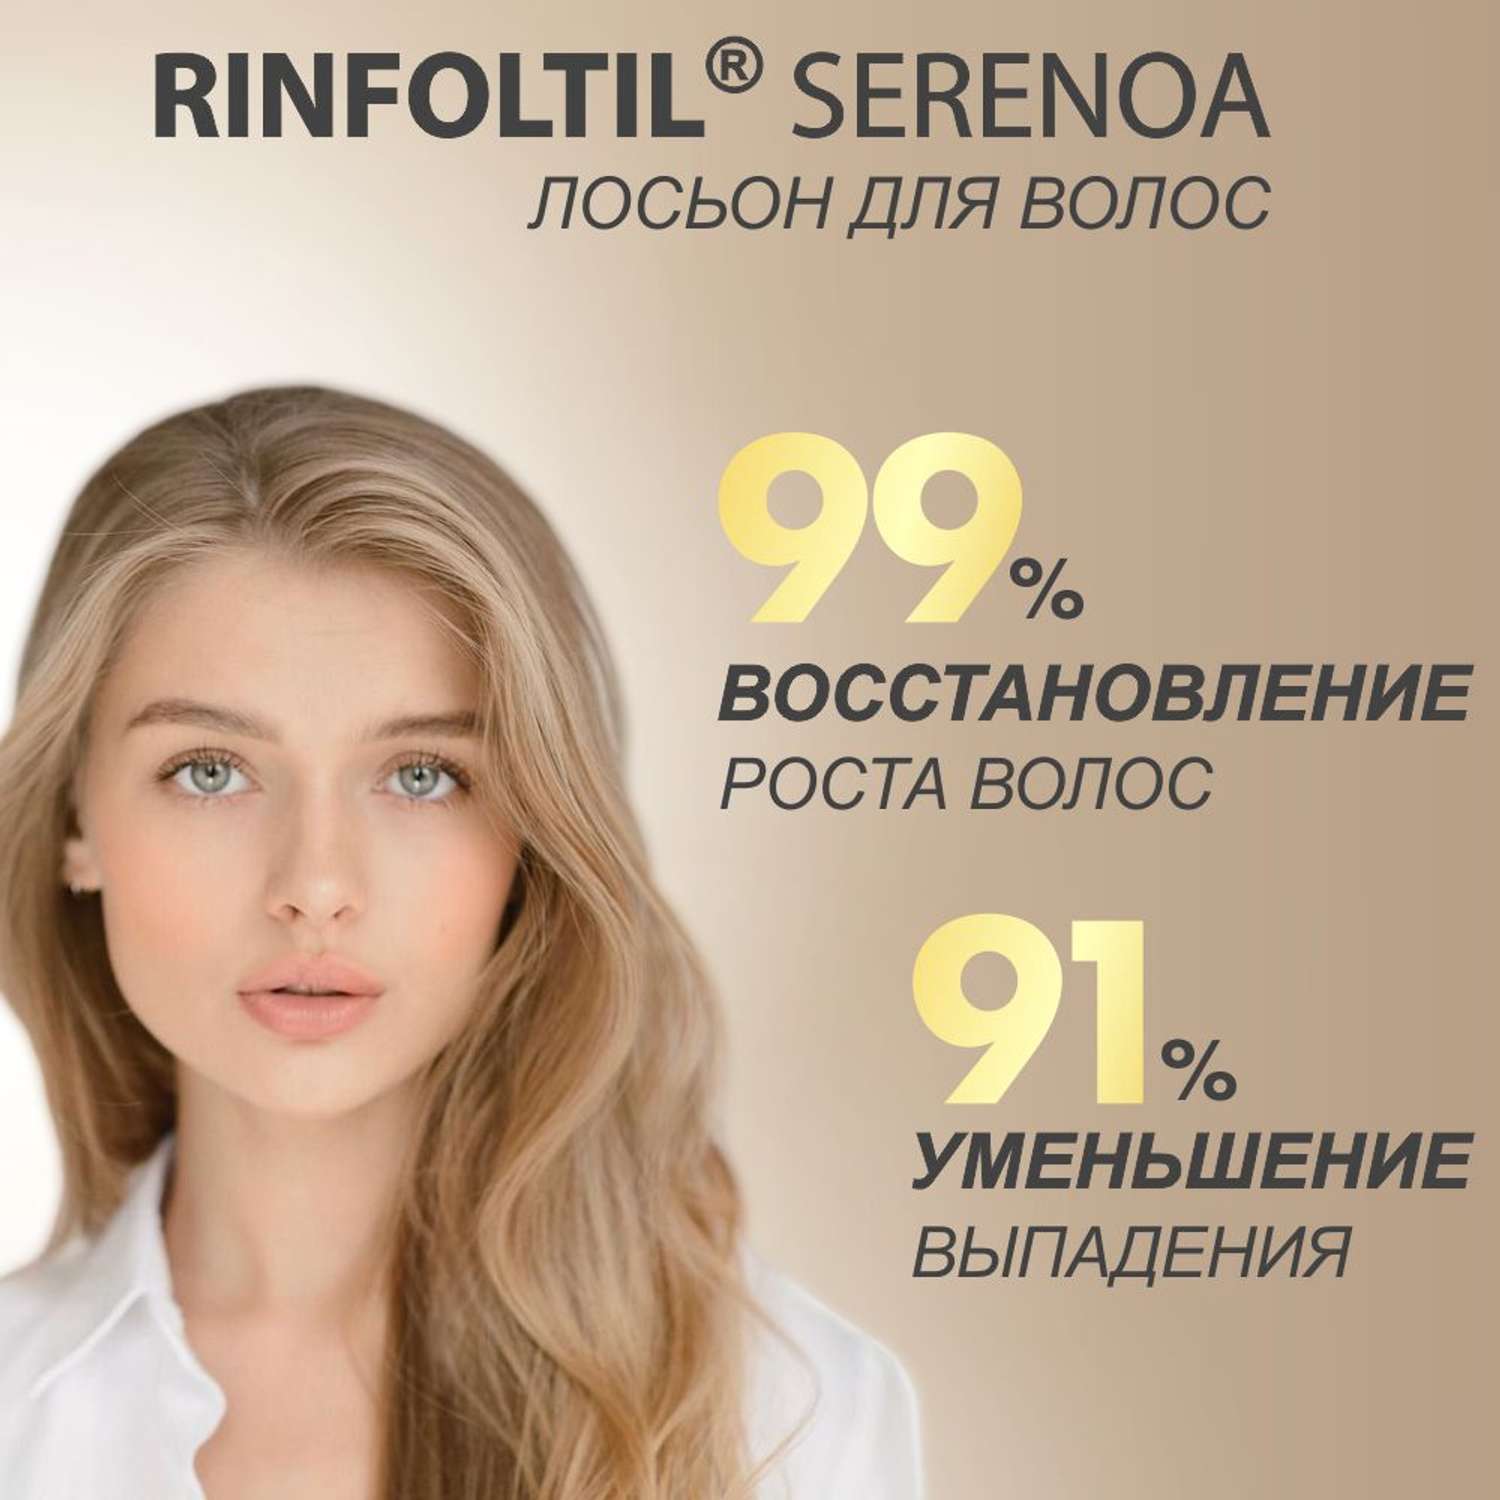 Лосьон Rinfoltil СЕРЕНОА лосьон для женщин для улучшения качества волос и ухода за кожей головы - фото 5